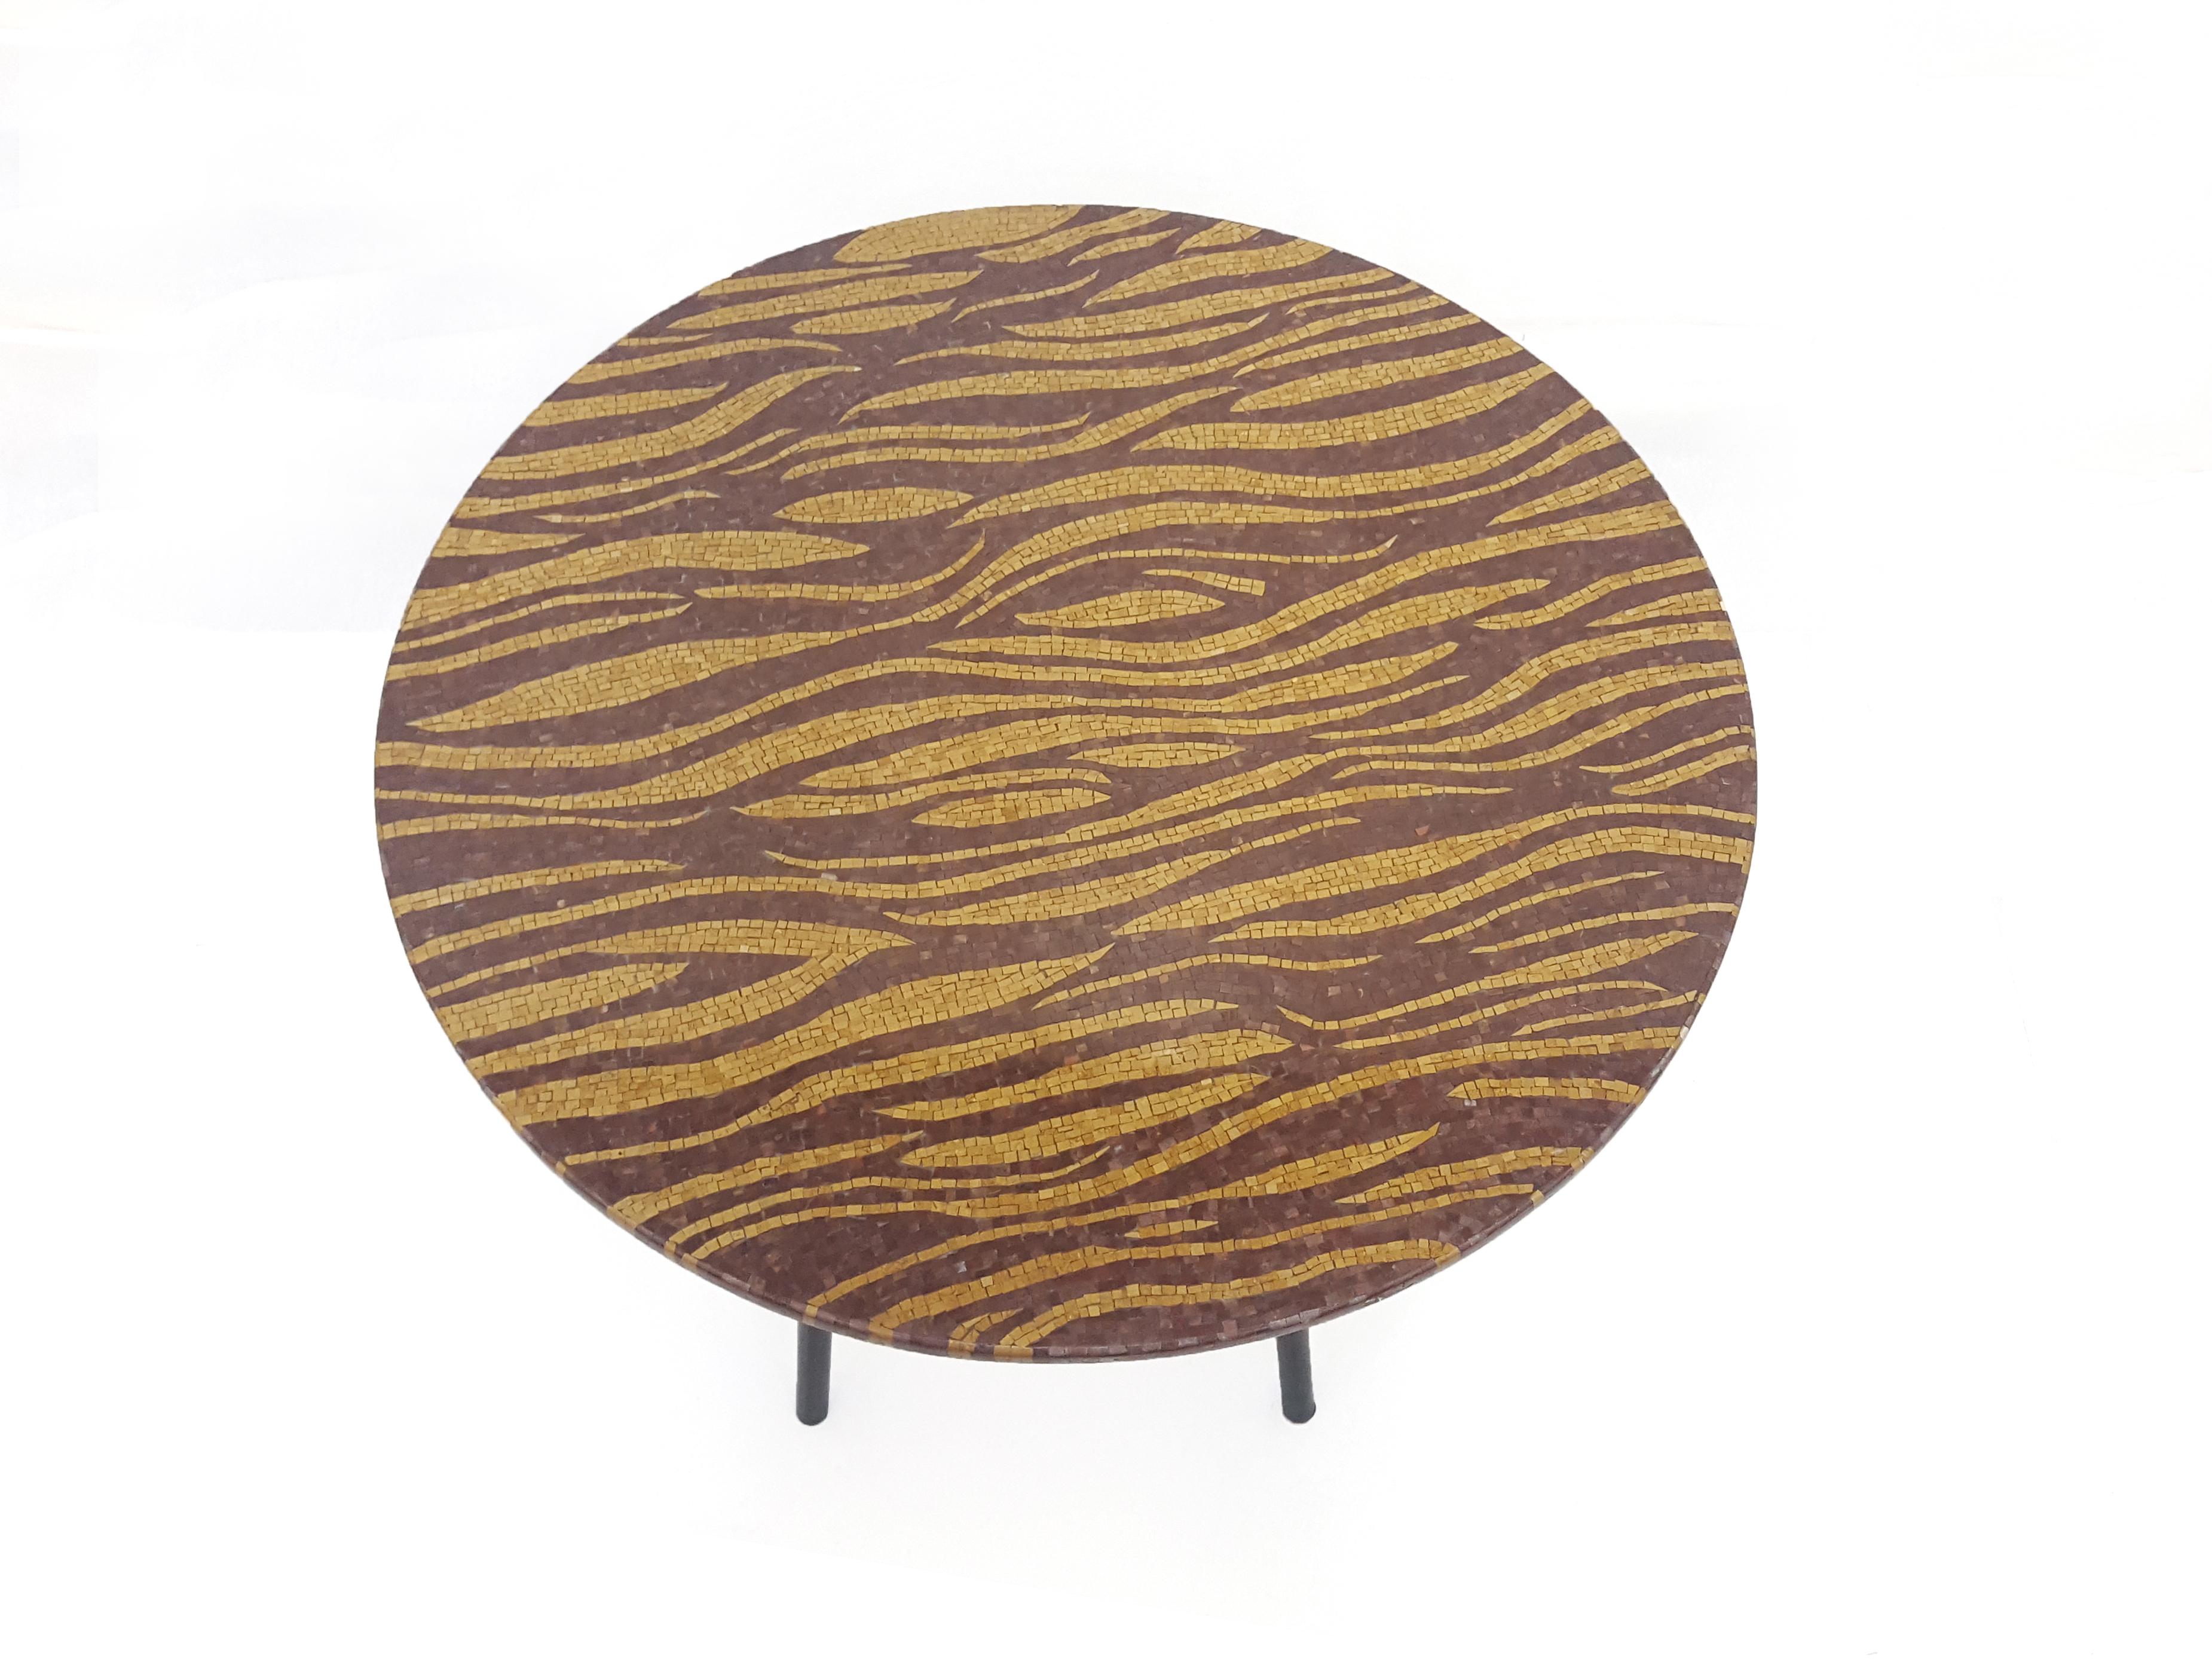 La table Tiger s'inspire de l'un des motifs de tapis les plus populaires de Stephanie Odegard. La table est fabriquée avec une mosaïque de pierres fines de haute qualité, composée de pierres semi-précieuses et fossiles. Chaque pièce de pierre mesure